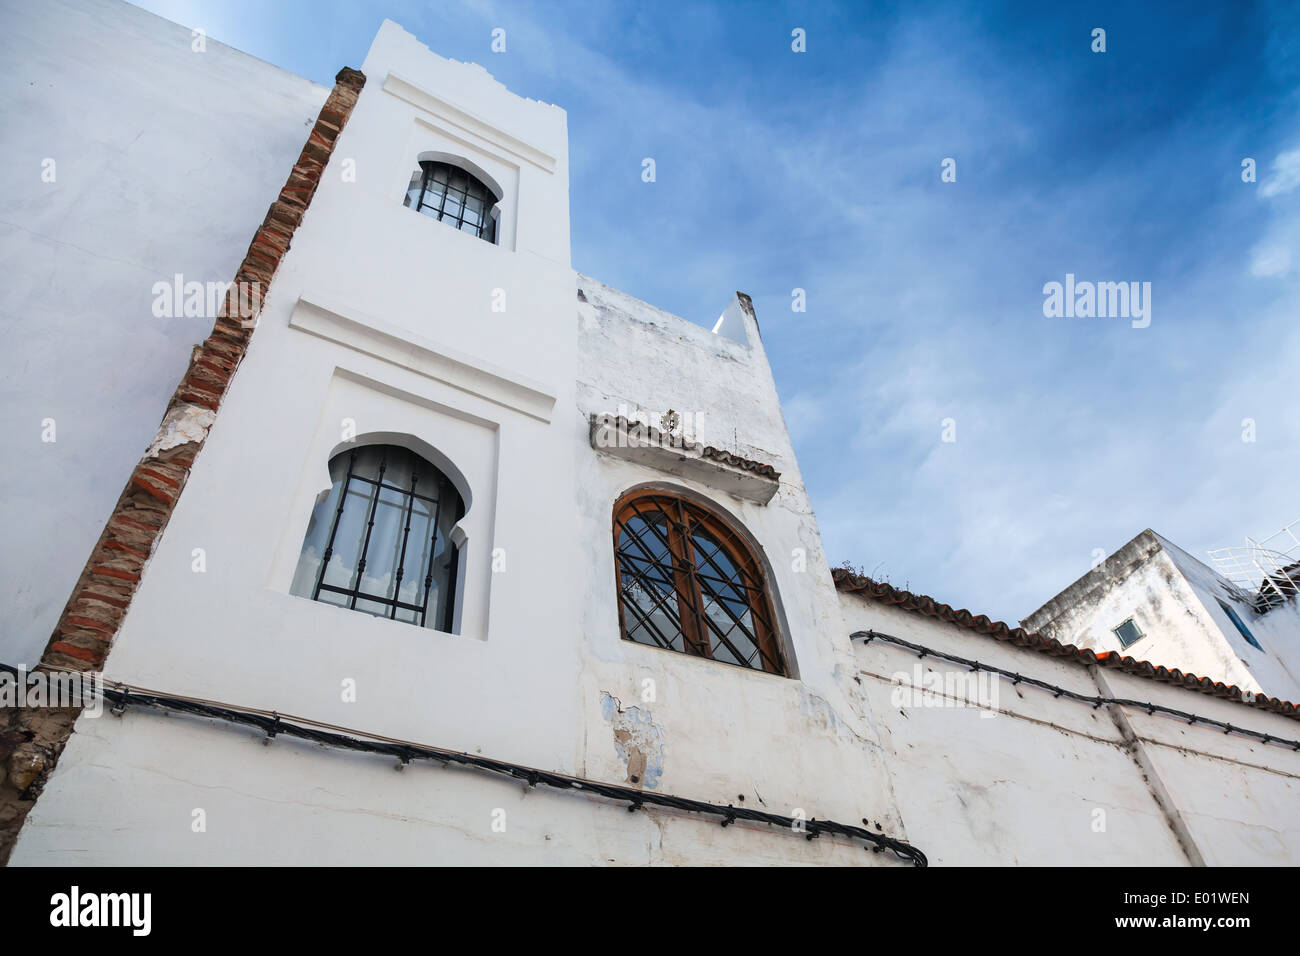 Las paredes blancas, ventanas y cielo azul. Medina, parte antigua de Tánger, Marruecos Foto de stock